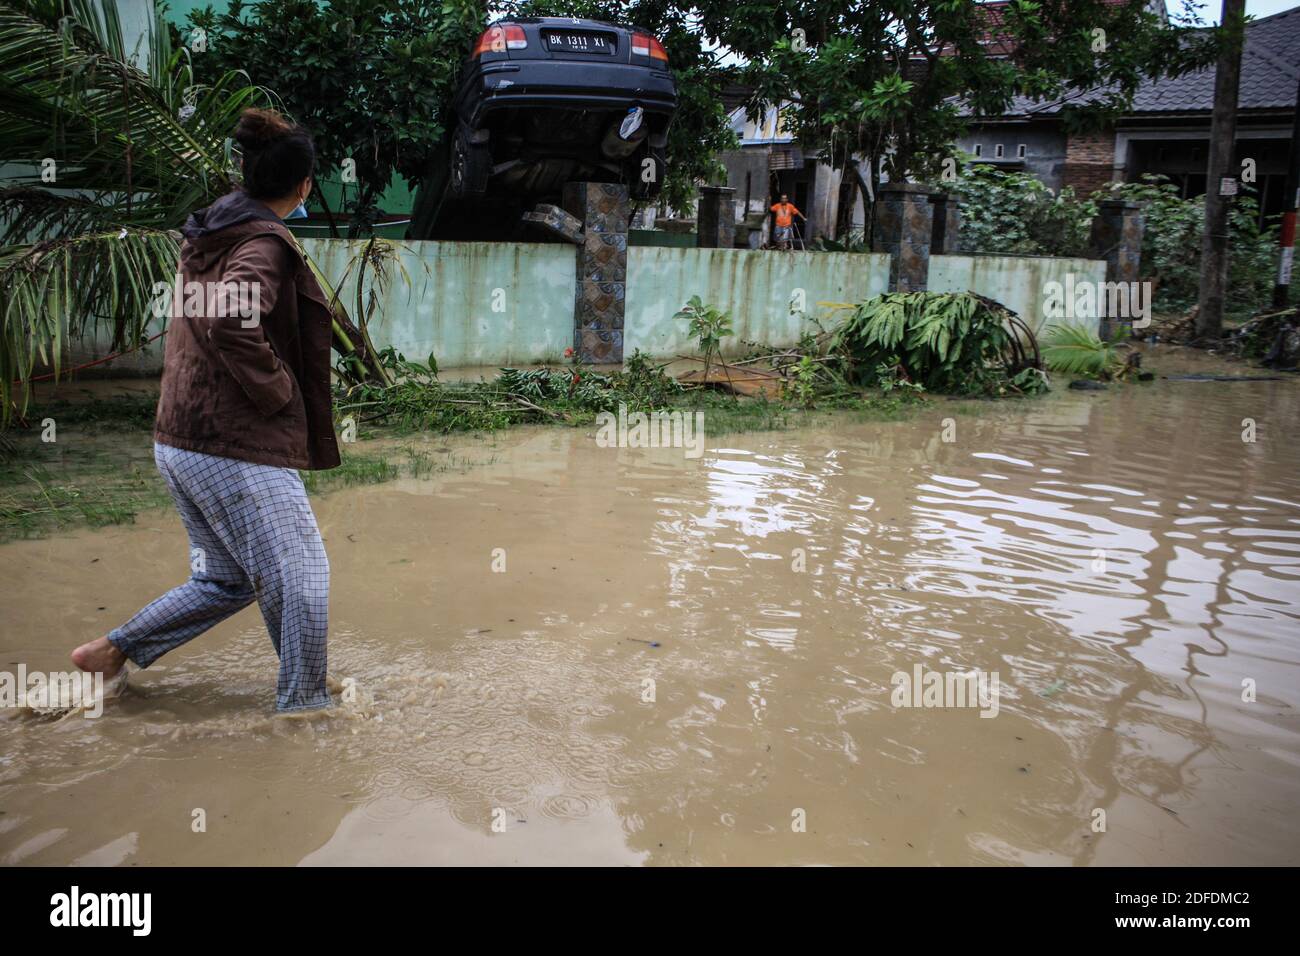 Un résident traverse une route submergée.plus de 12,338 résidents ont été touchés par les inondations provoquées par les pluies torrentielles et les rivières débordantes dont cinq décès ont été signalés. Banque D'Images